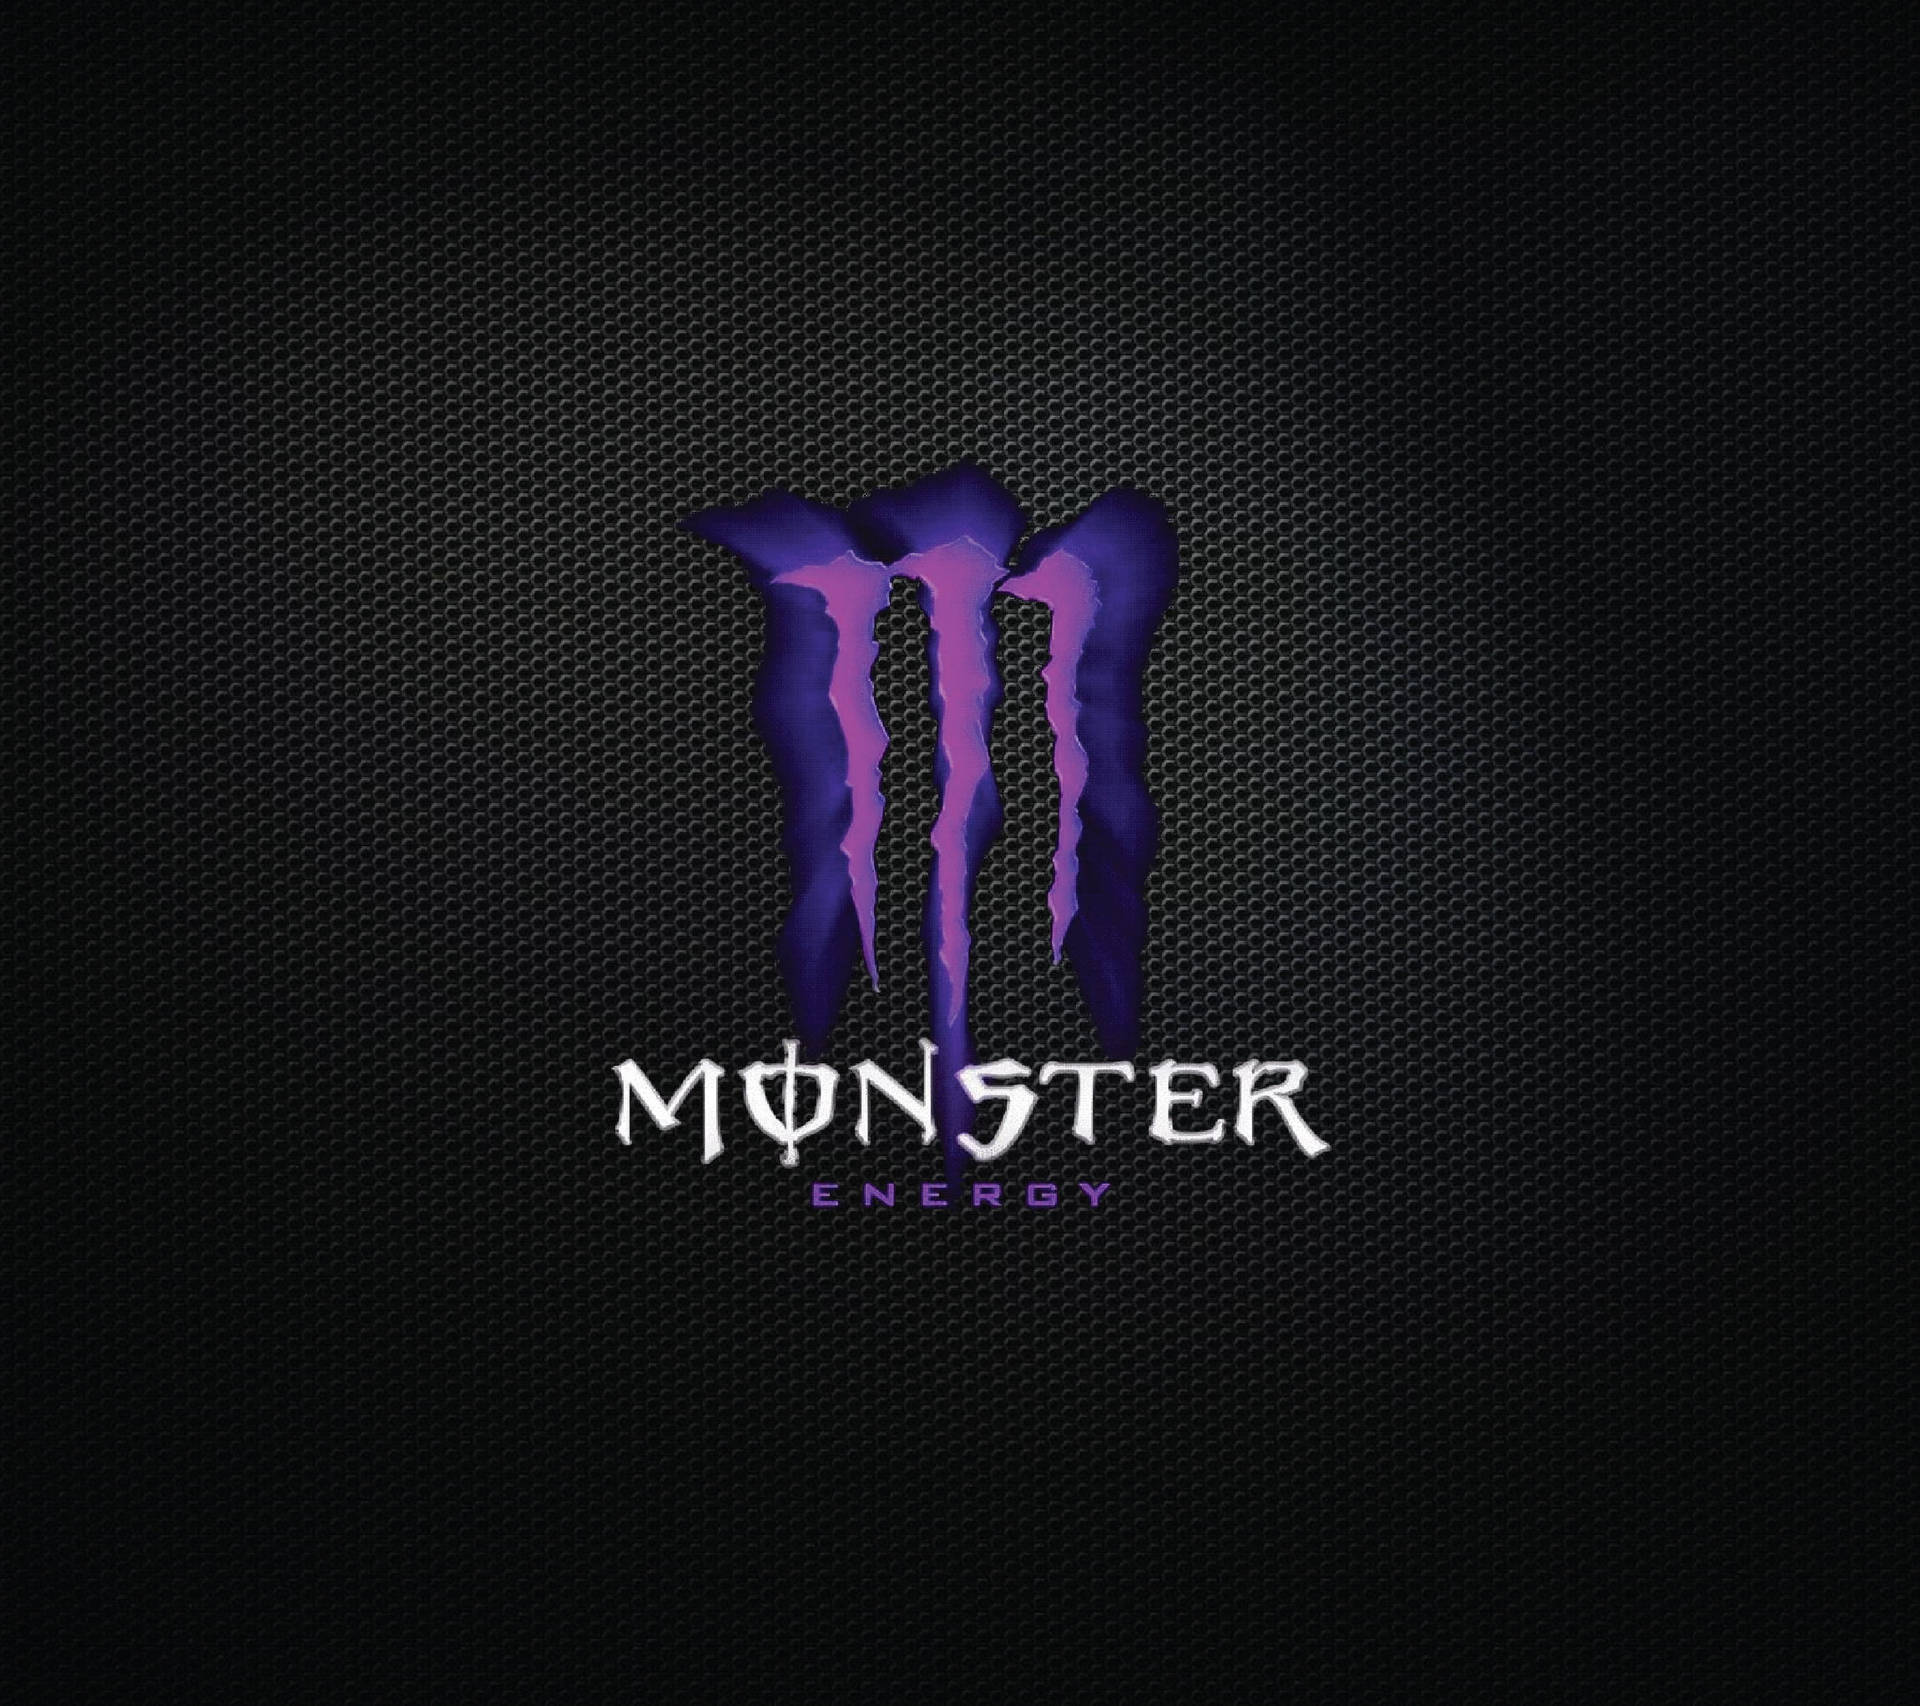 Black And Purple Aesthetic Monster Logo Wallpaper